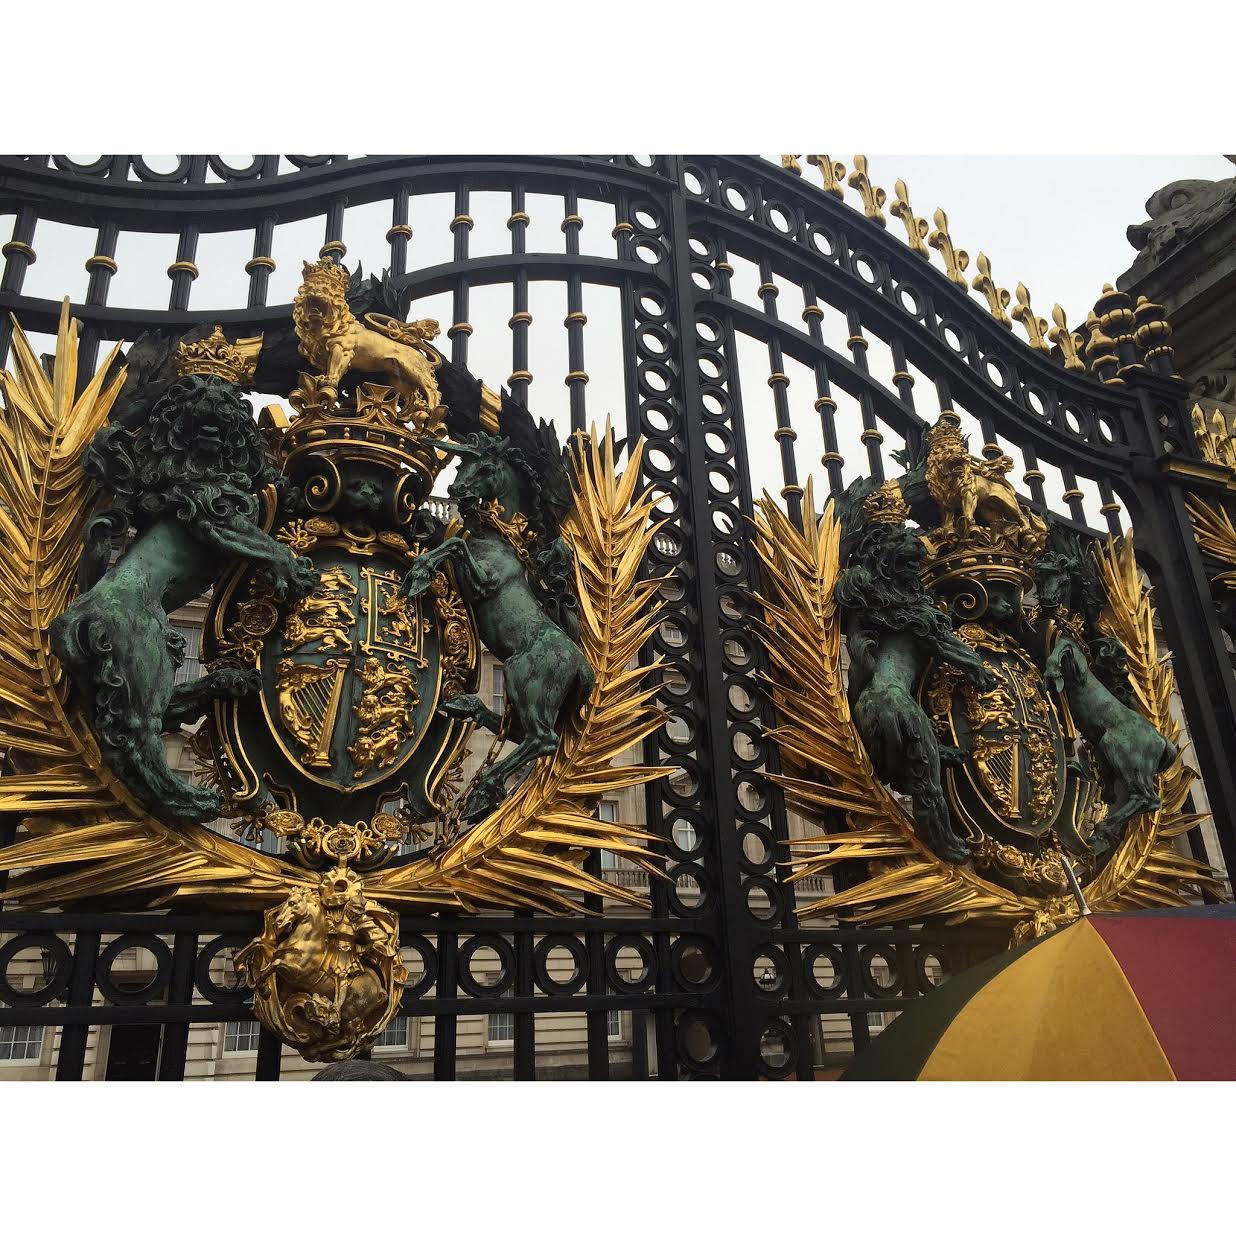 The gates of Buckingham Palace. 